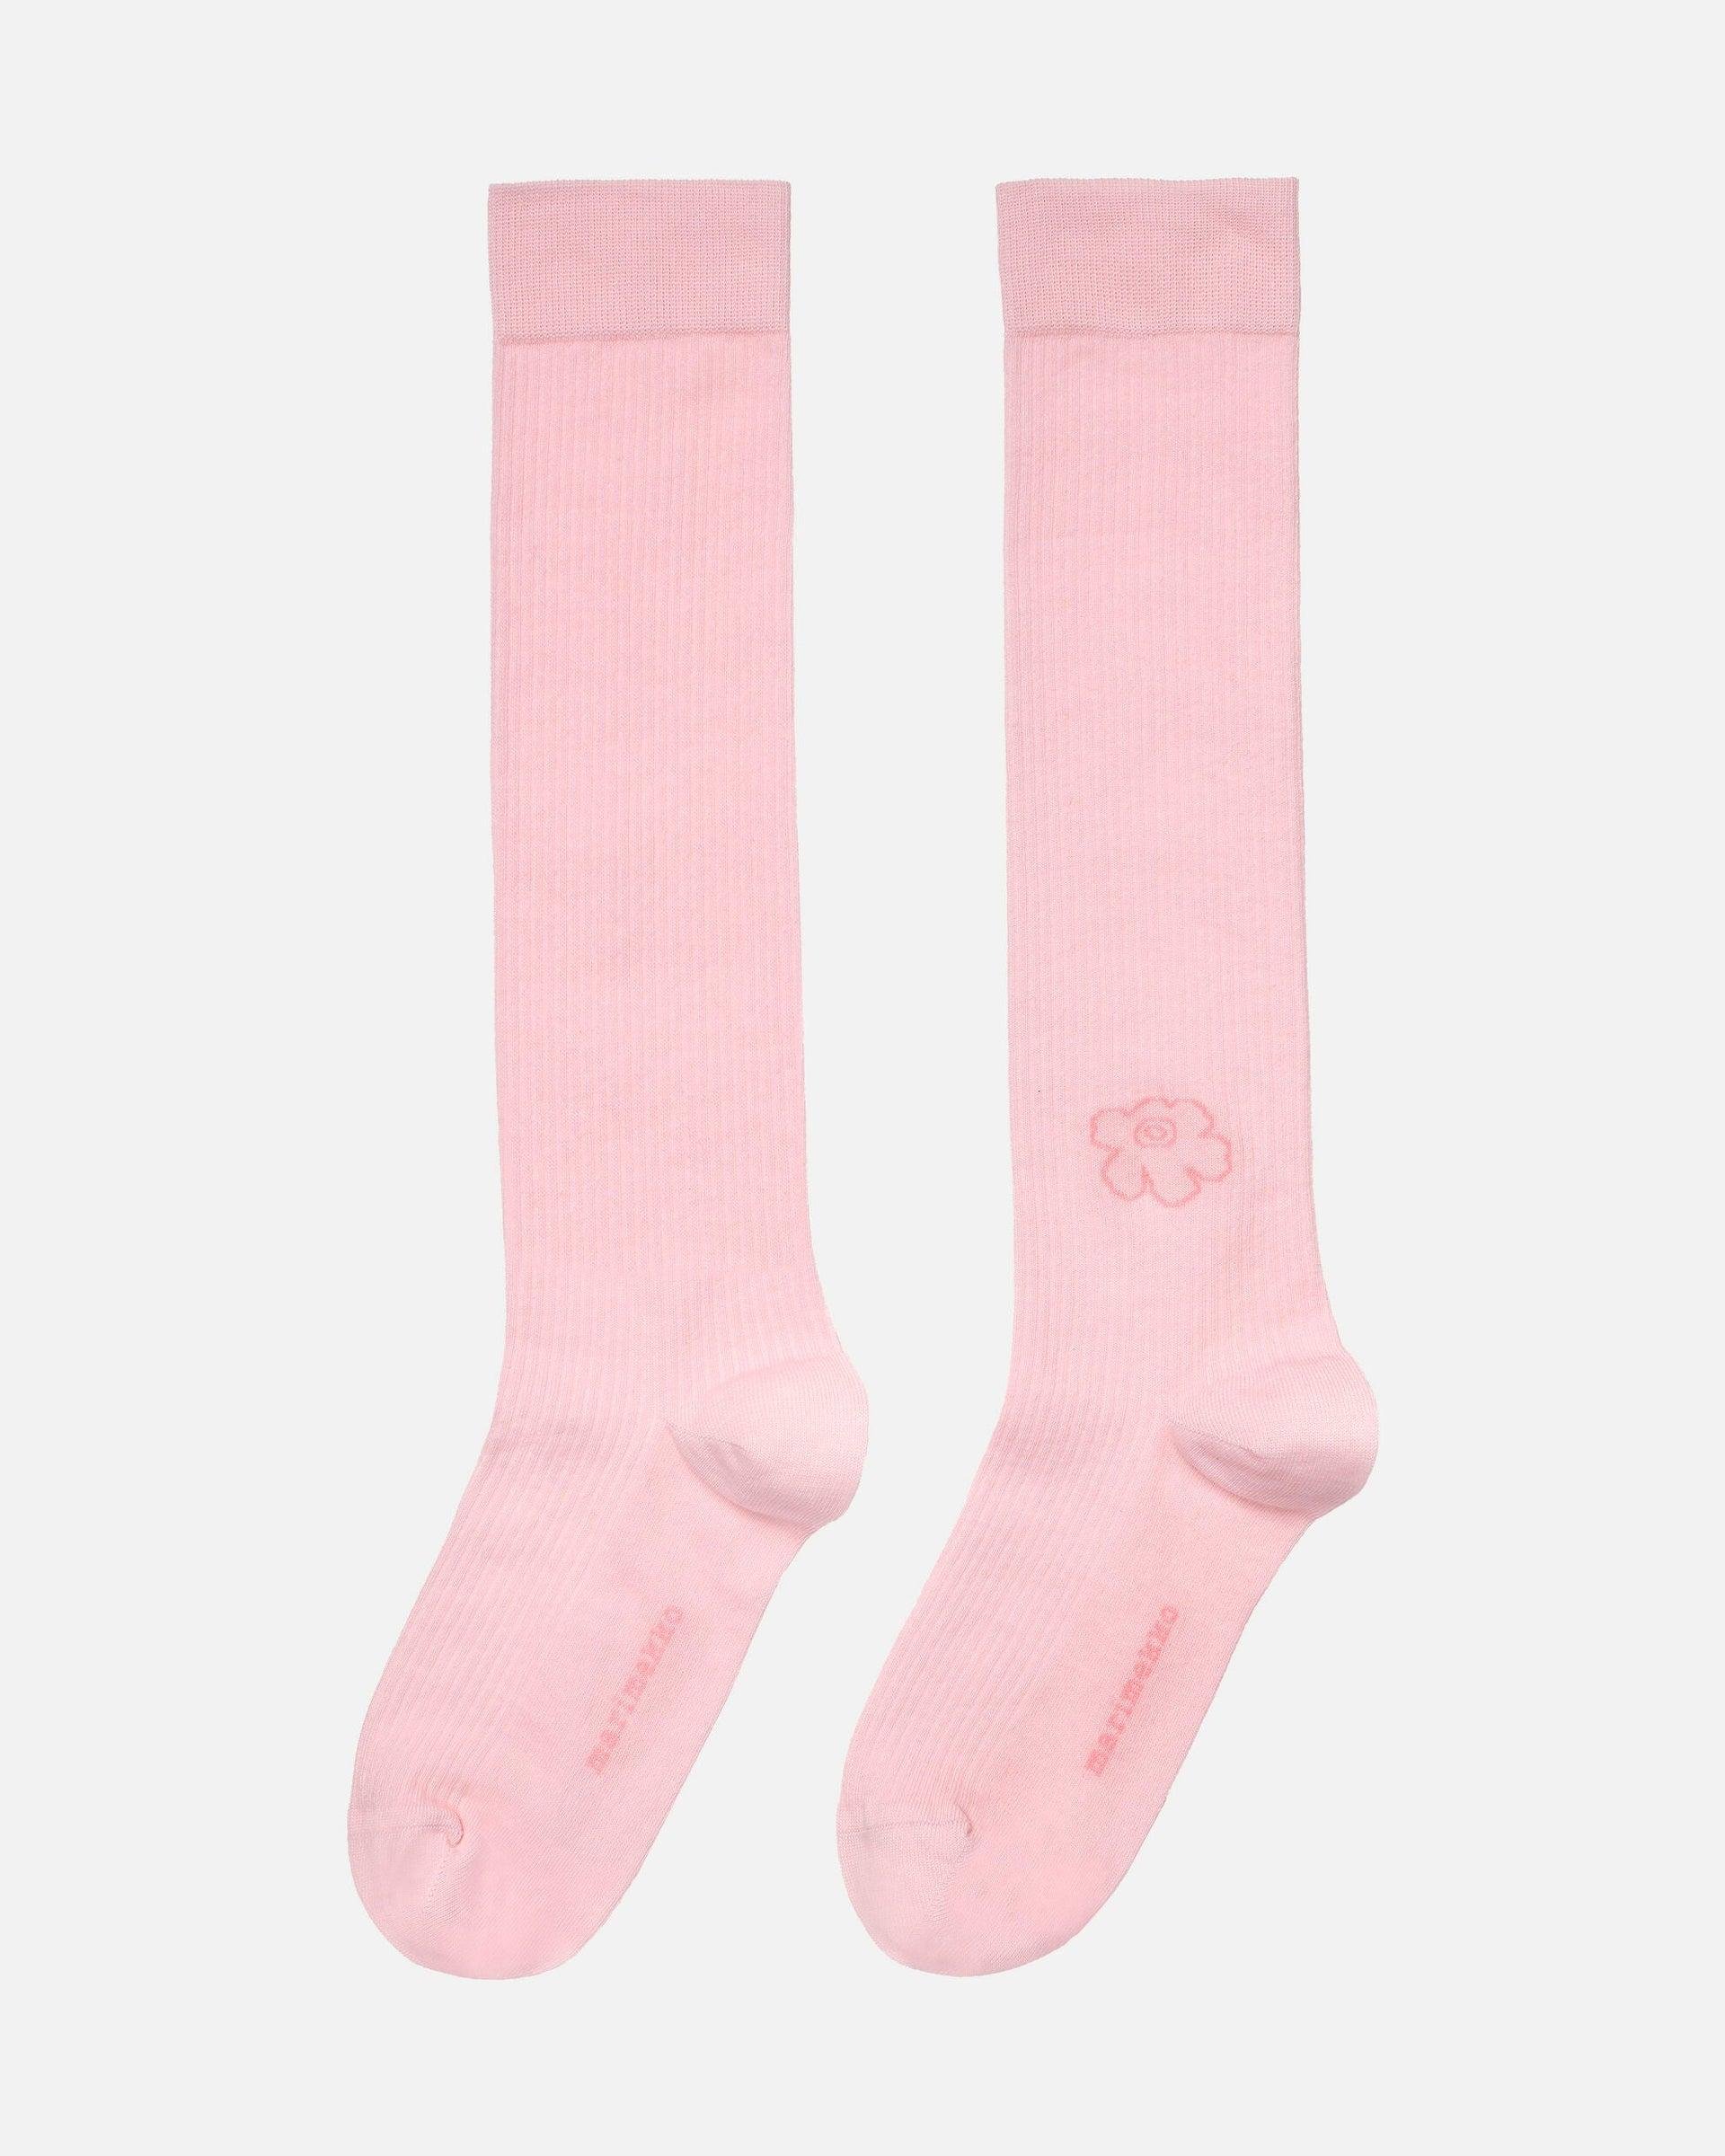 Talkki Unikko Knee Socks by MARIMEKKO